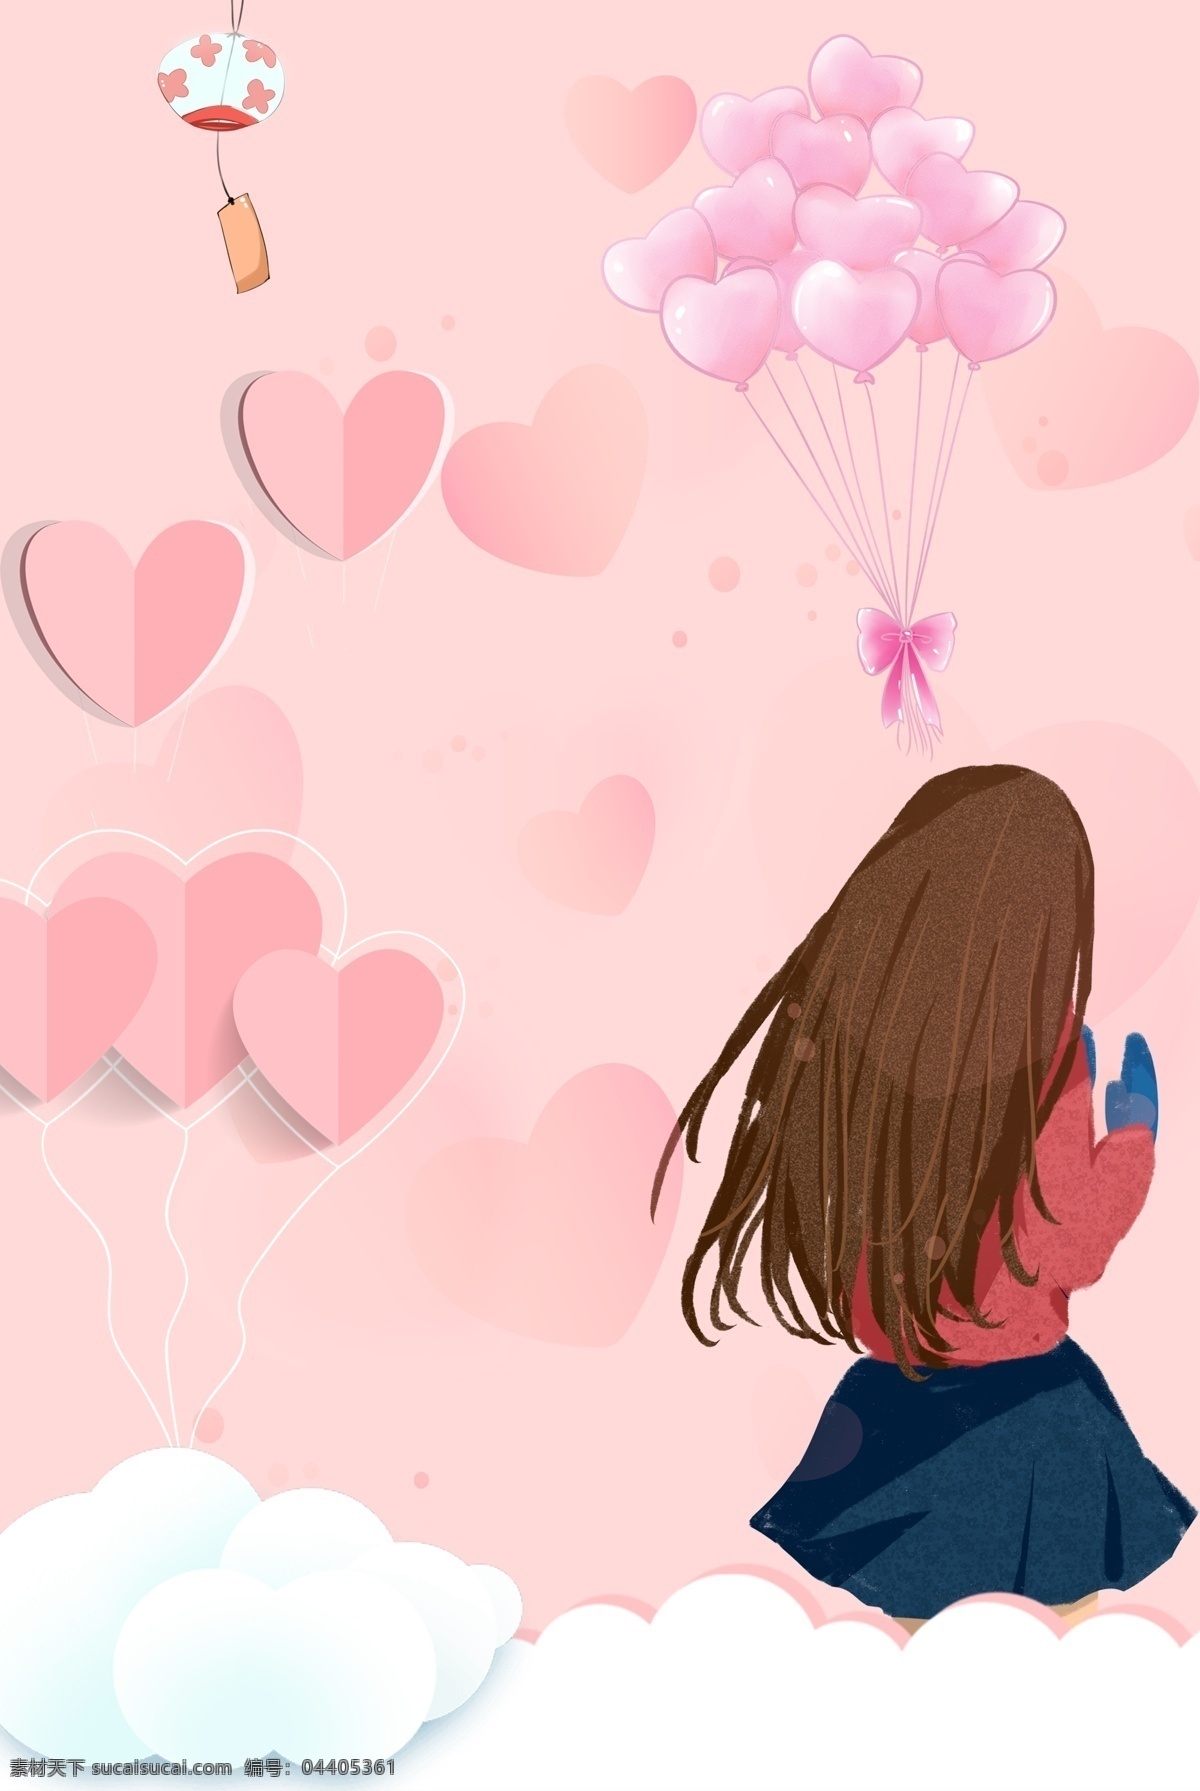 心形 云彩 少女 节 背景 图 少女节 折纸 可爱 粉色系 气球 风铃 清新